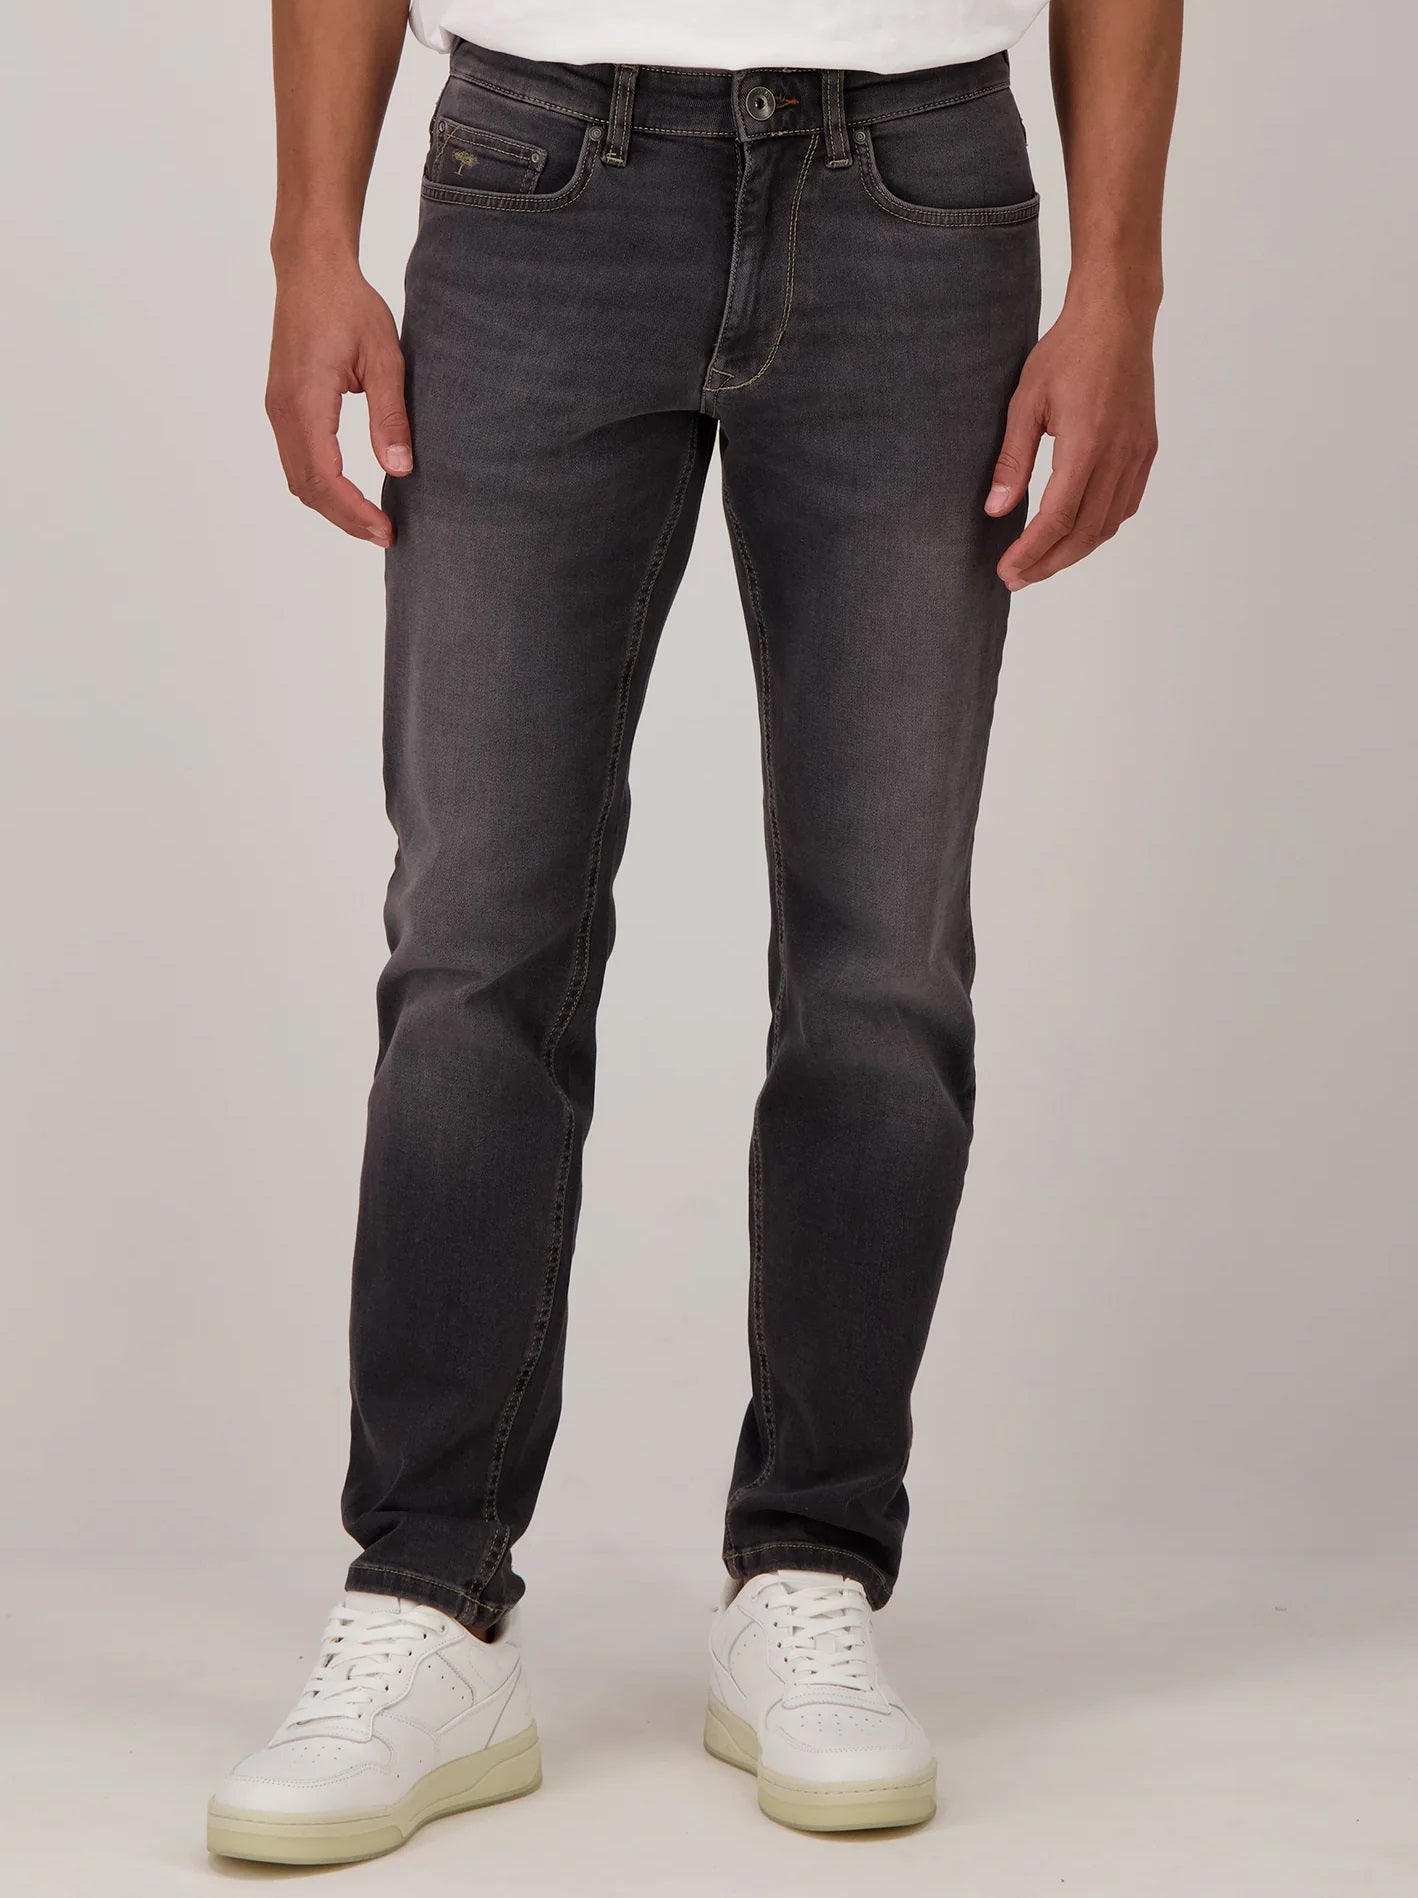 FYNCH HATTON Denim Jeans - Men's Modern Slim Fit – Black Worn